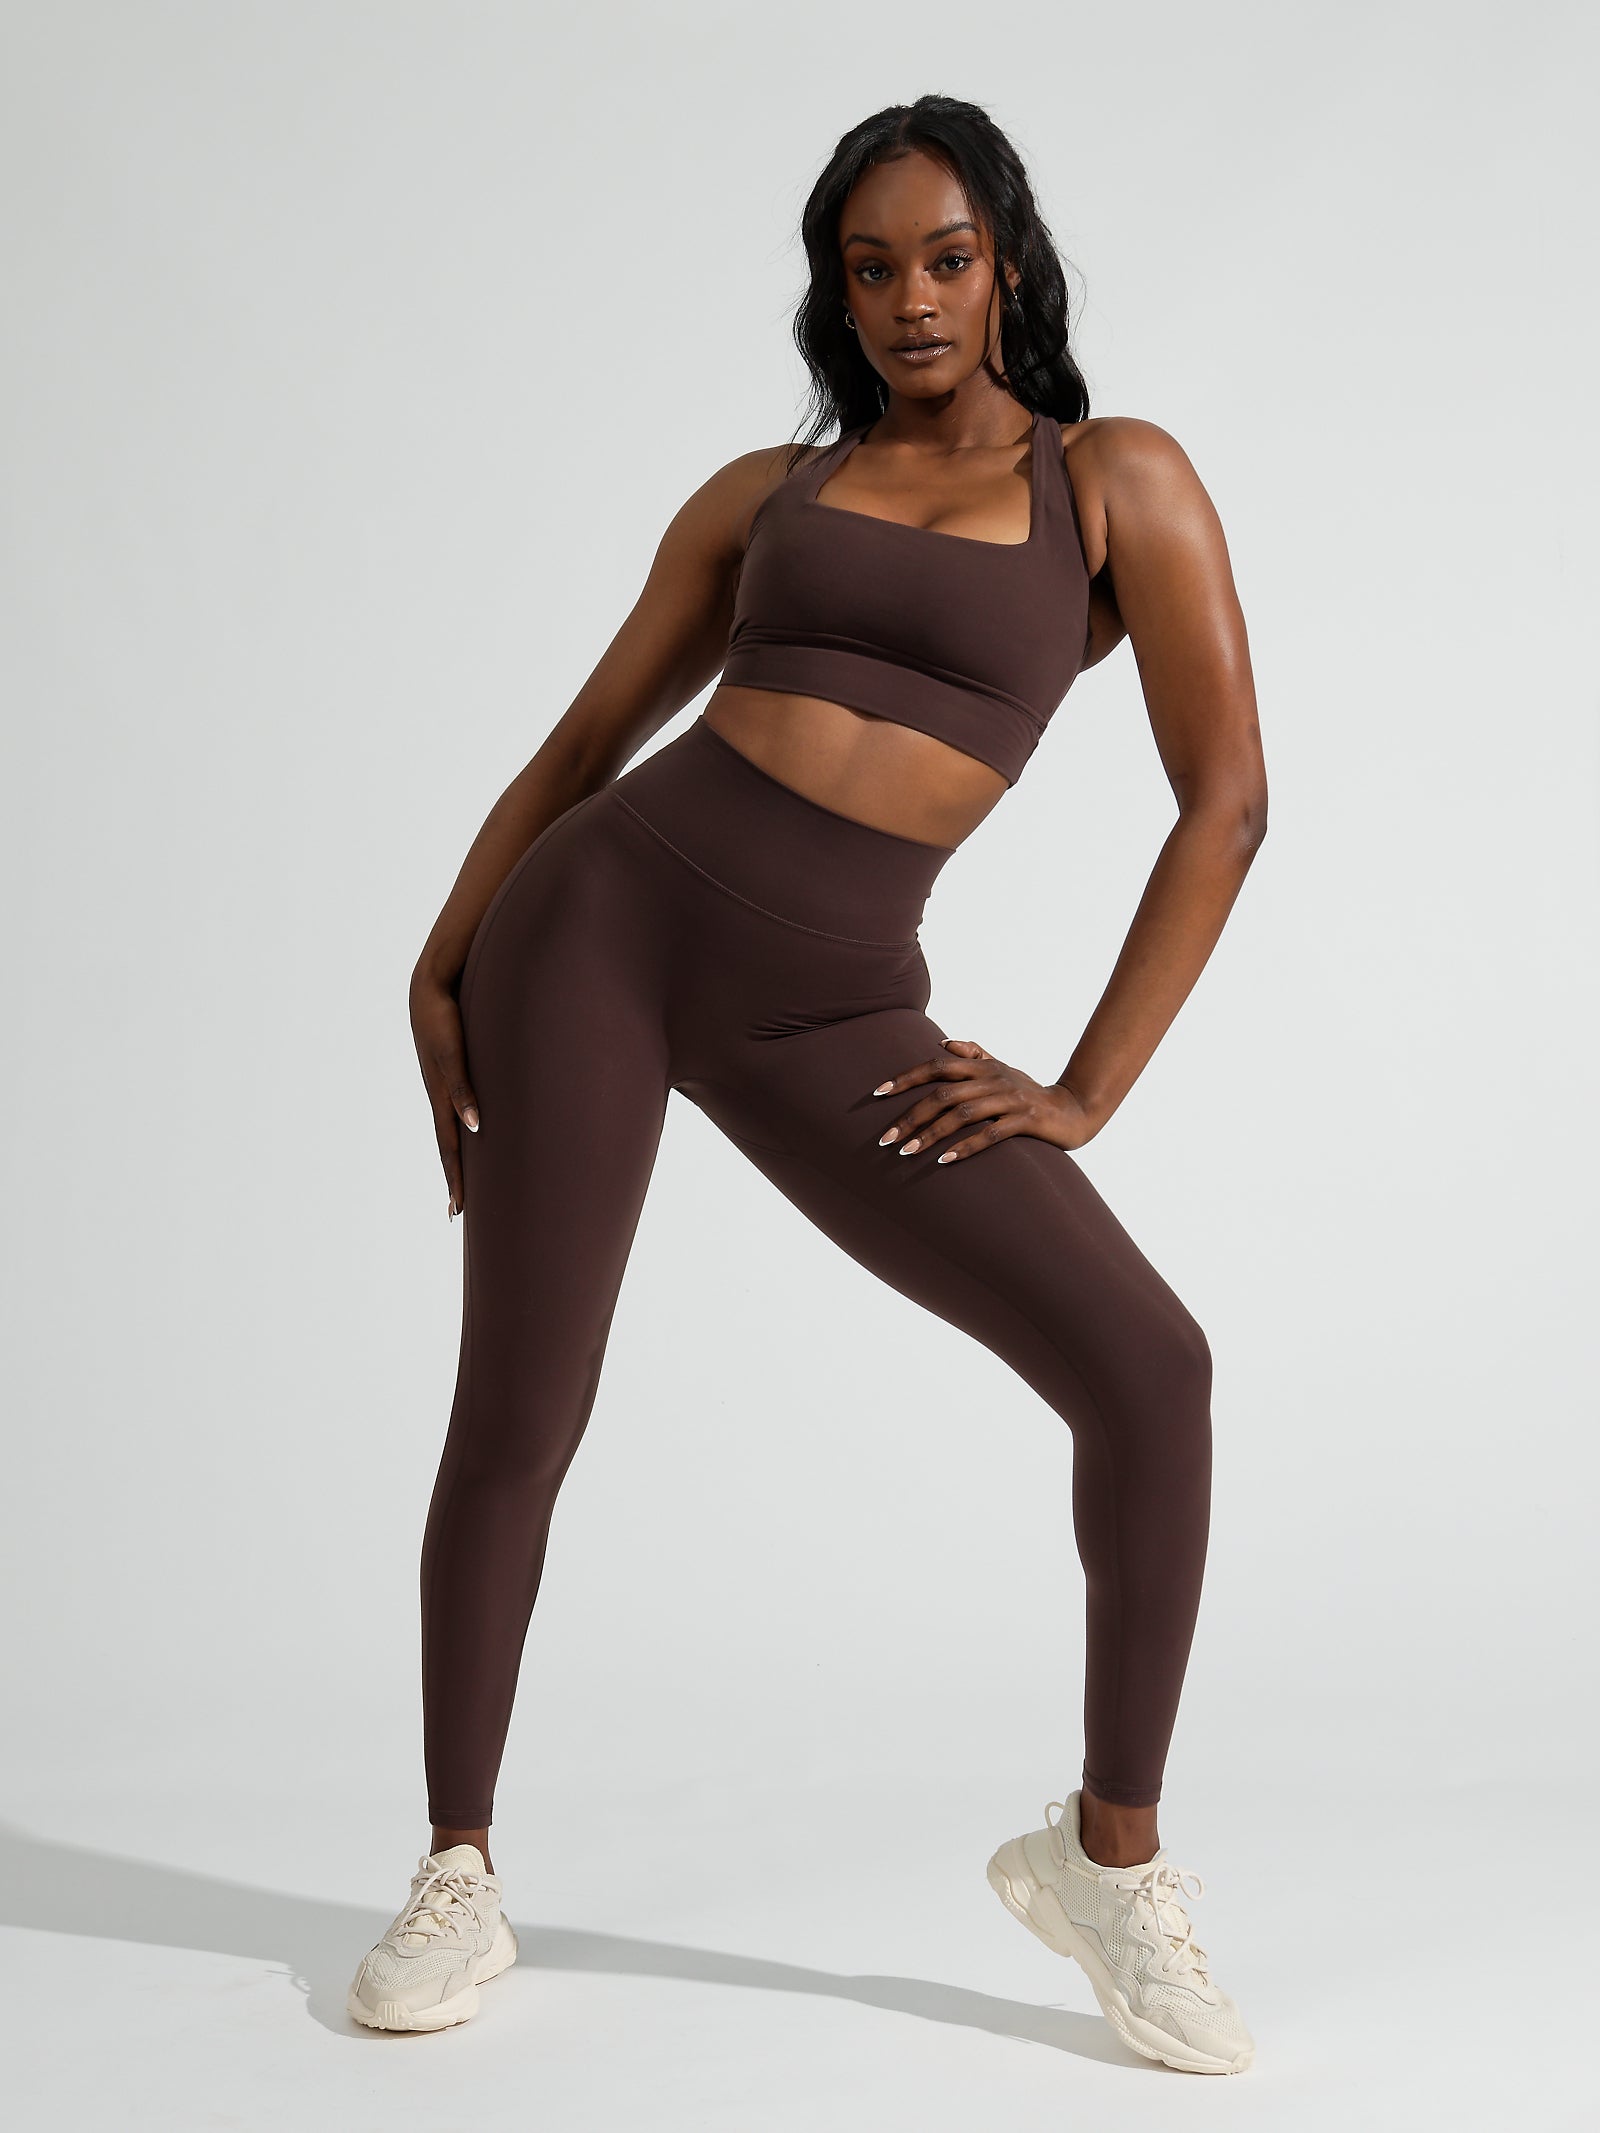 Buffbunny Legacy Leggings Yoga High-waist Tights Sport Women Tummy